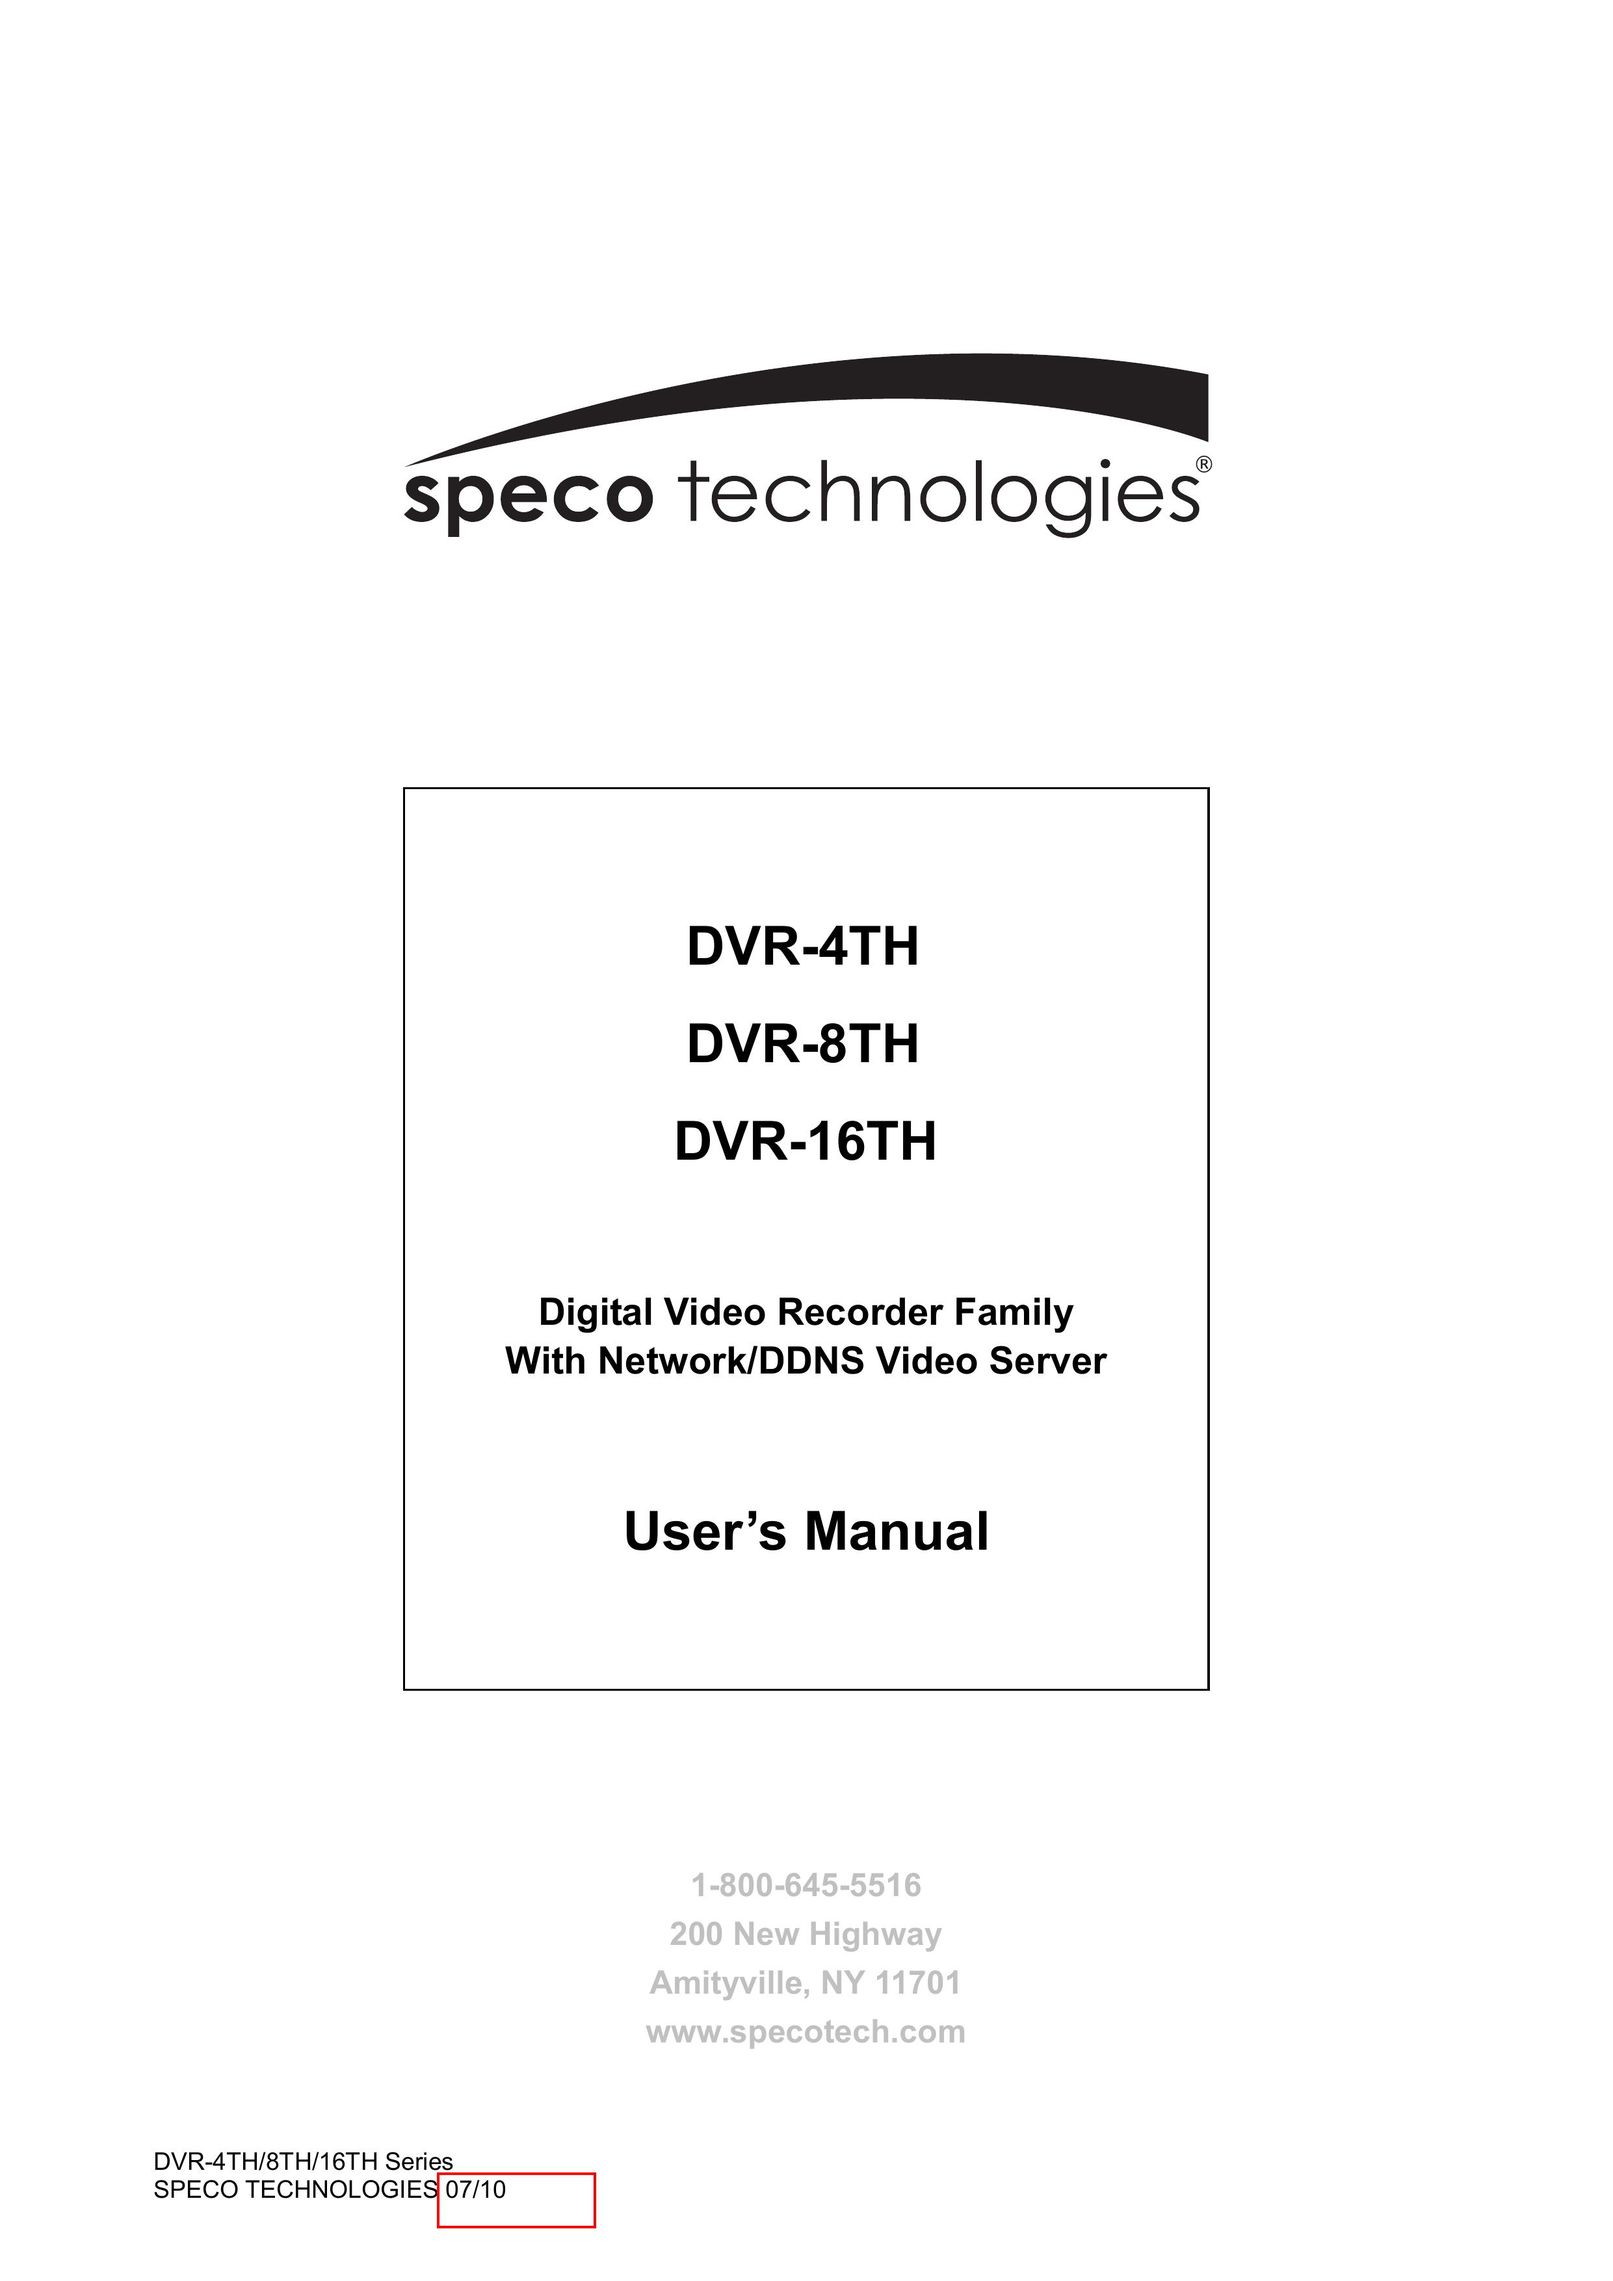 Samsung DVR-4TH DVR User Manual